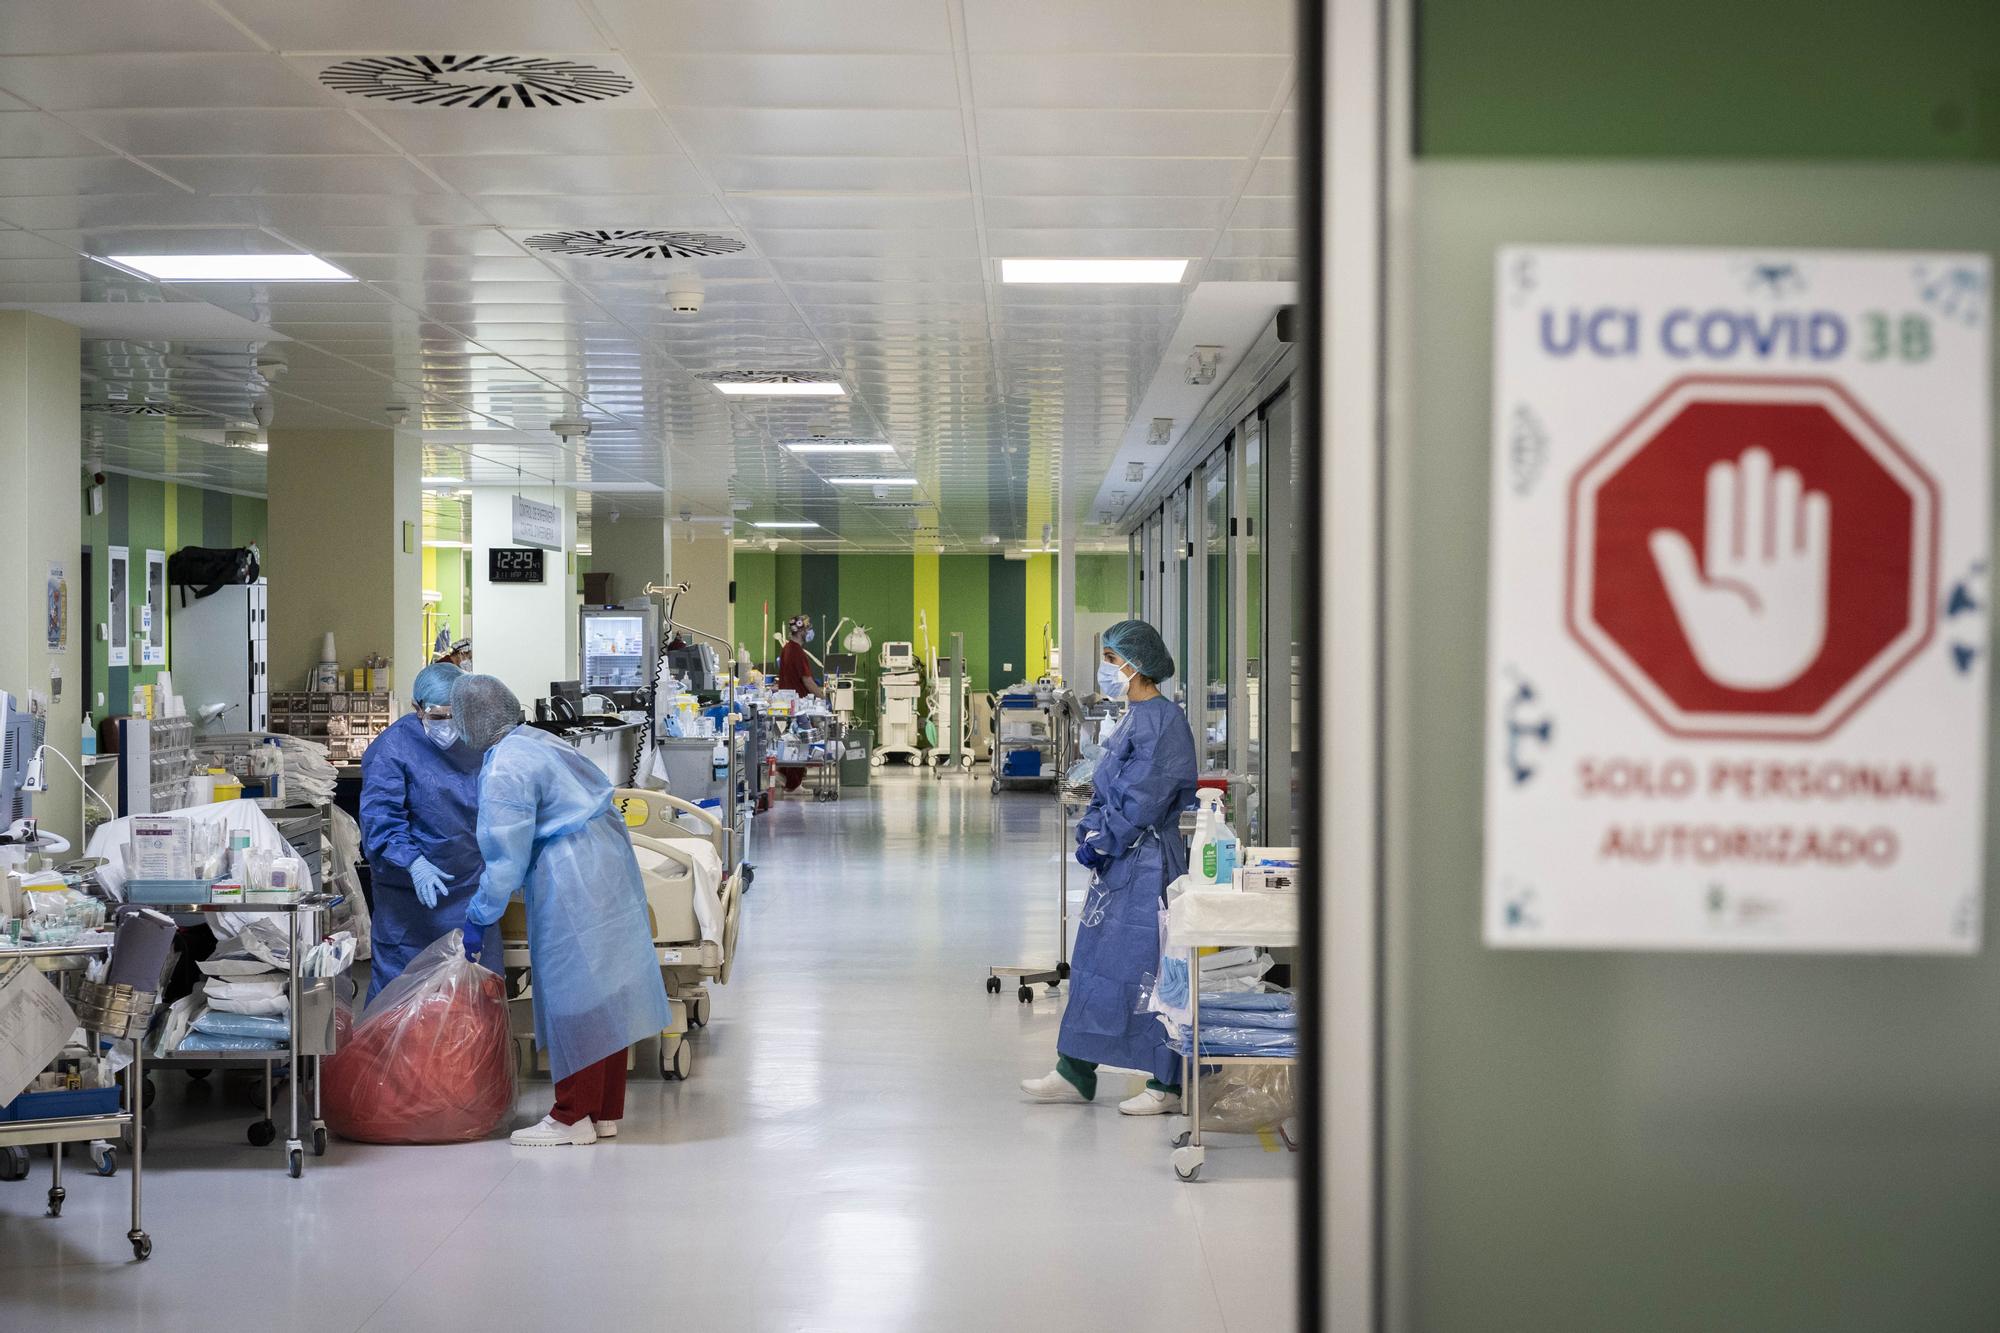 Levante-EMV entra en la sala covid del Hospital General de València: la lucha frente al coronavirus de cerca